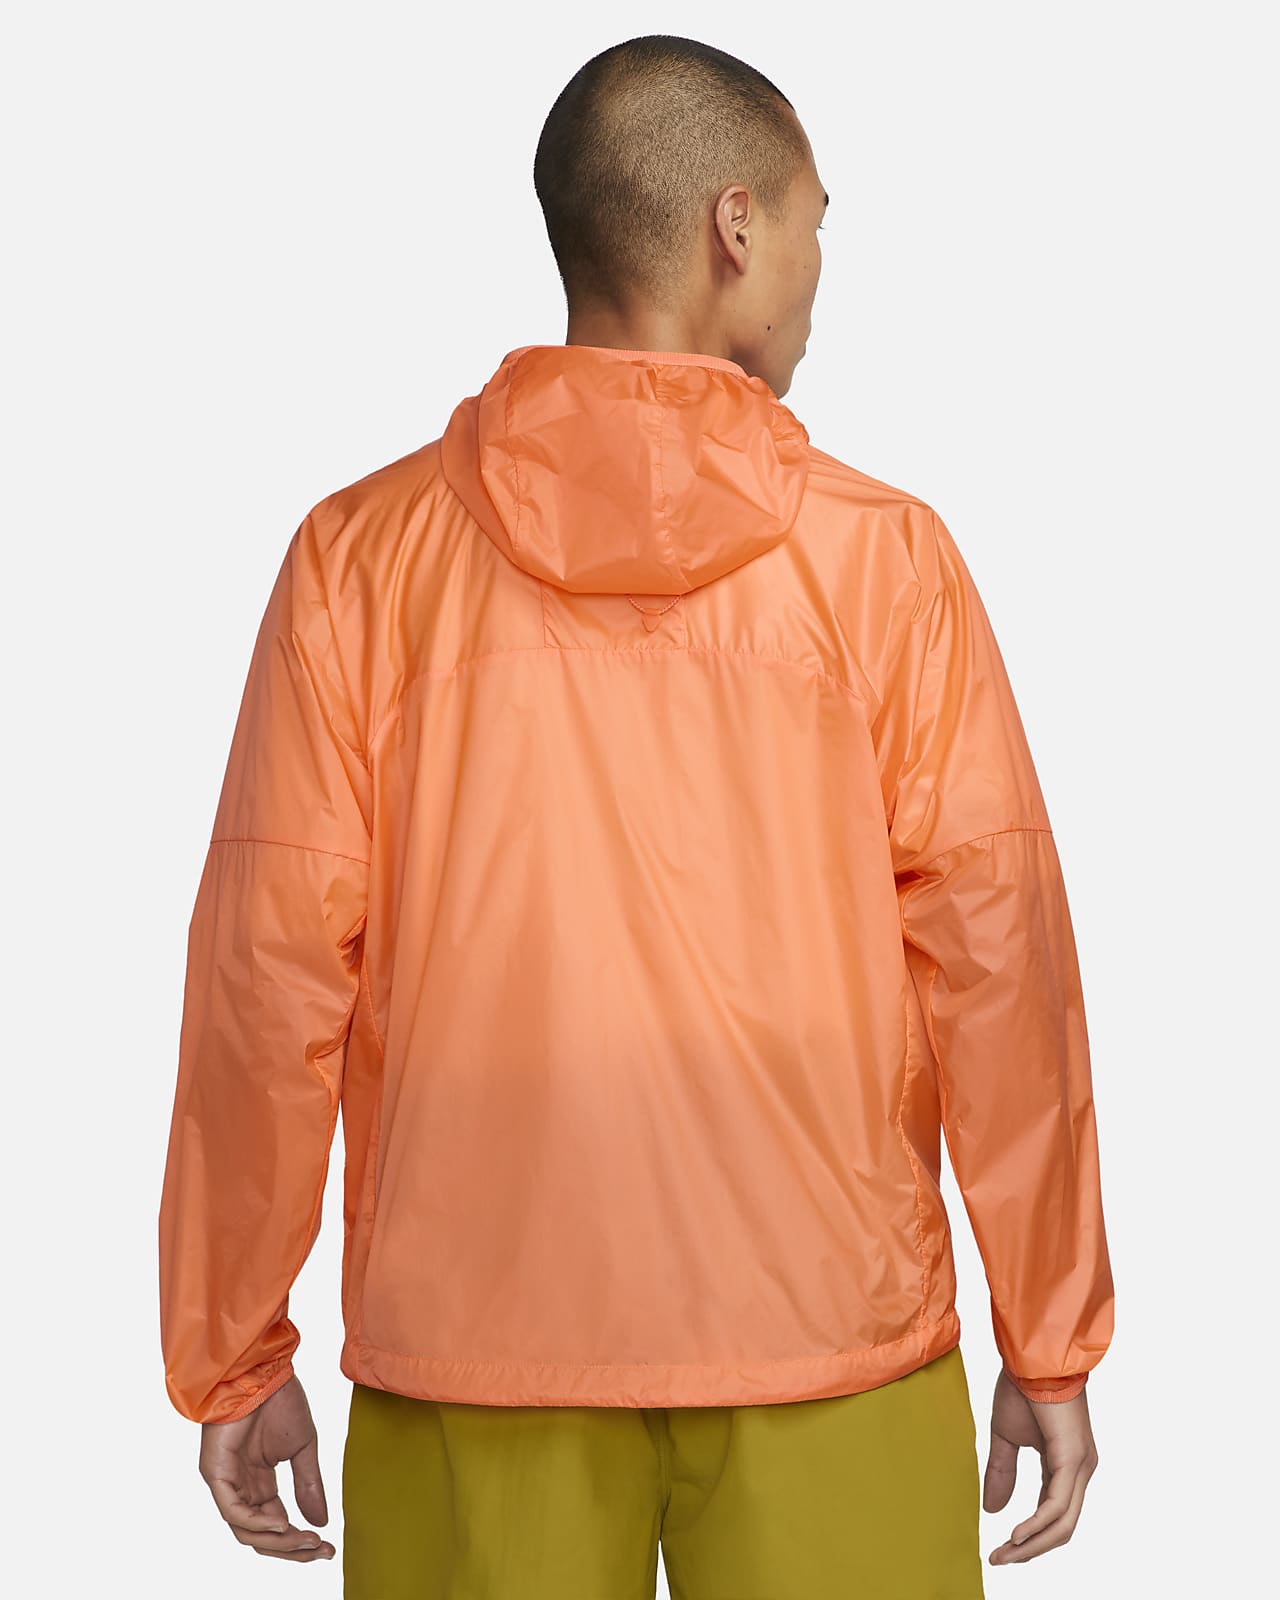 Nike ACG 'Cinder Cone' Men's Windproof Jacket